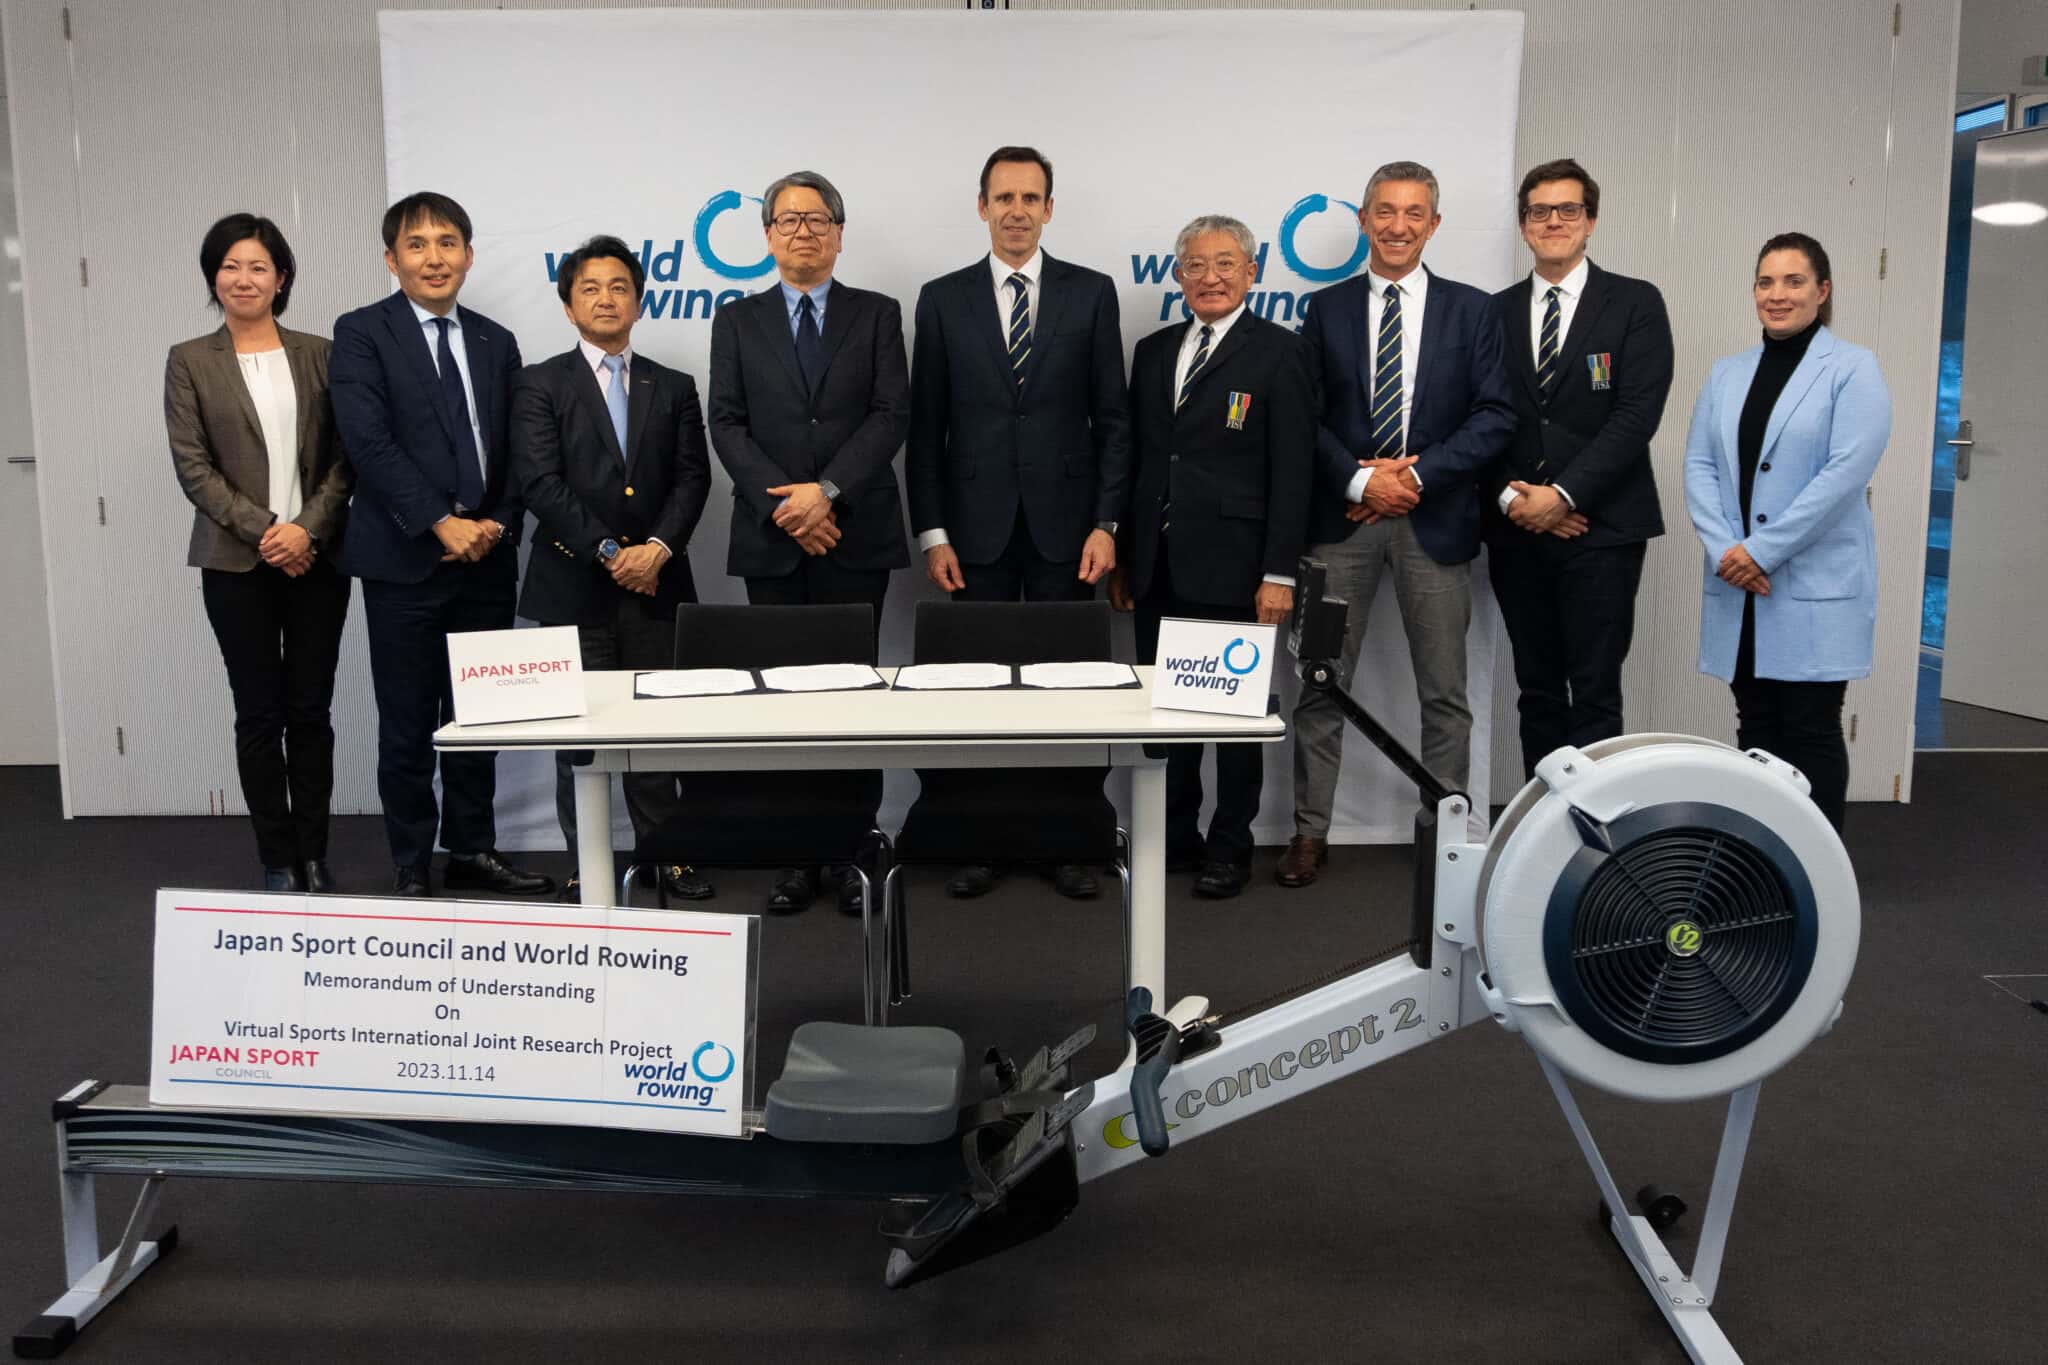 ボートニュース |  World Rowing が日本スポーツ振興センターと提携し、バーチャル スポーツとインドア ボートに関する国際共同研究の新たな道を切り開く